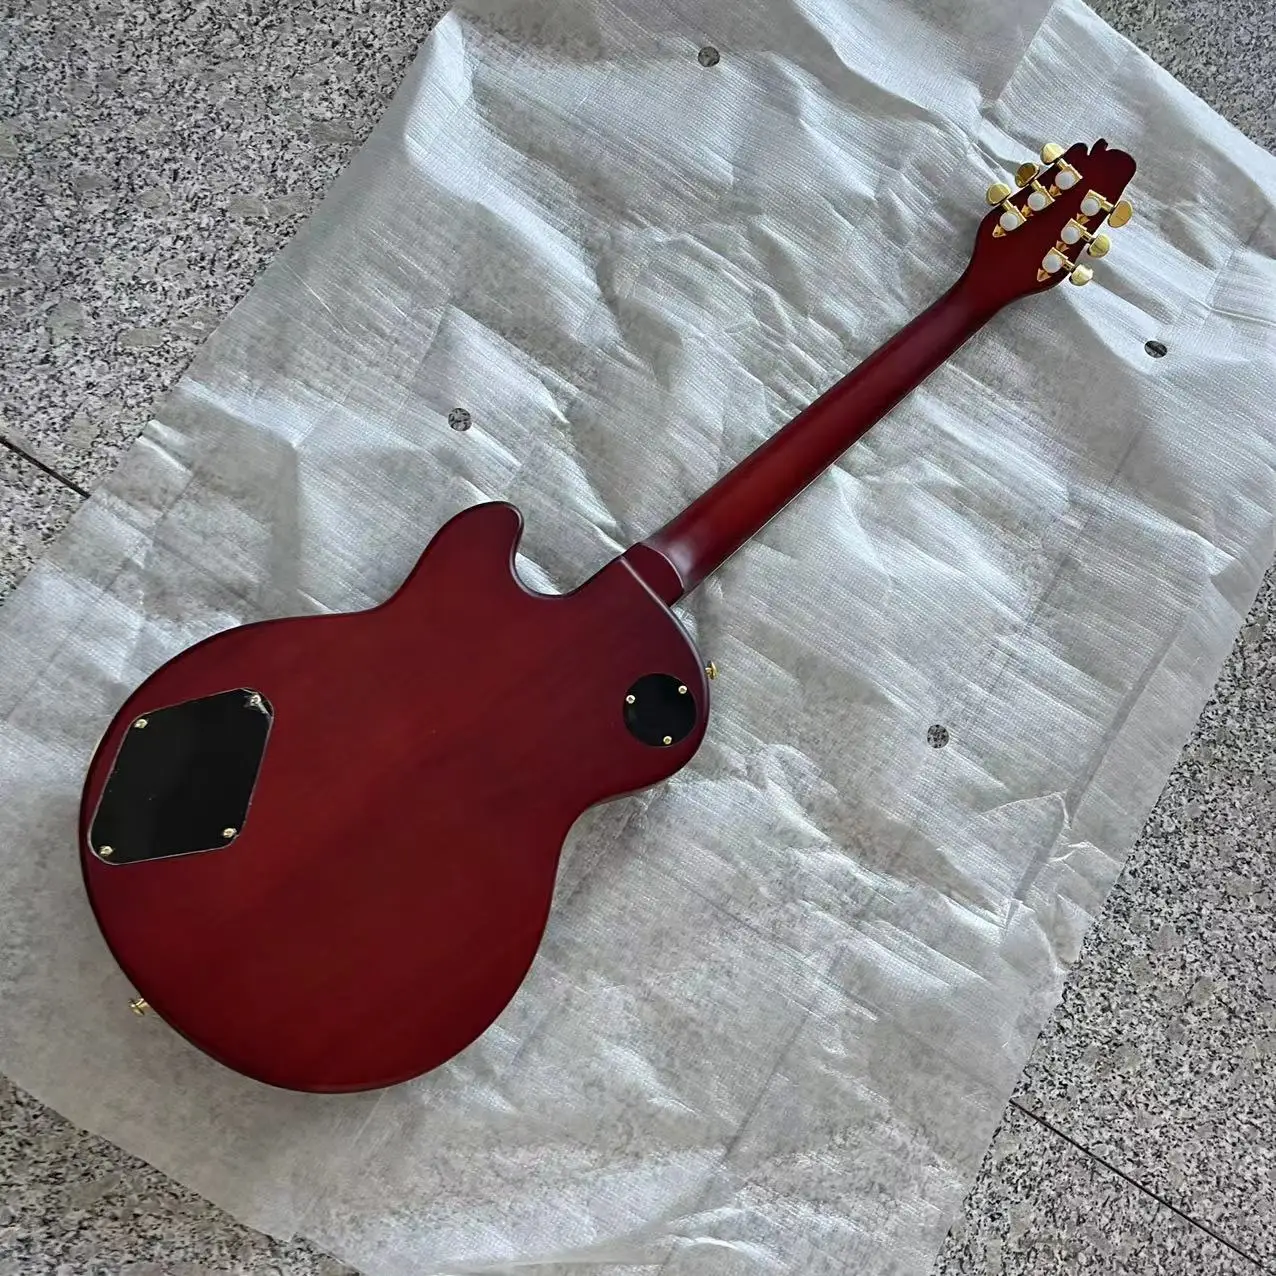 Резбовани електрическа китара във формата на змия, мат нитроцеллюлозная боя, реалното изображение на доставка, срок на доставка 30 дни, може да бъде променено